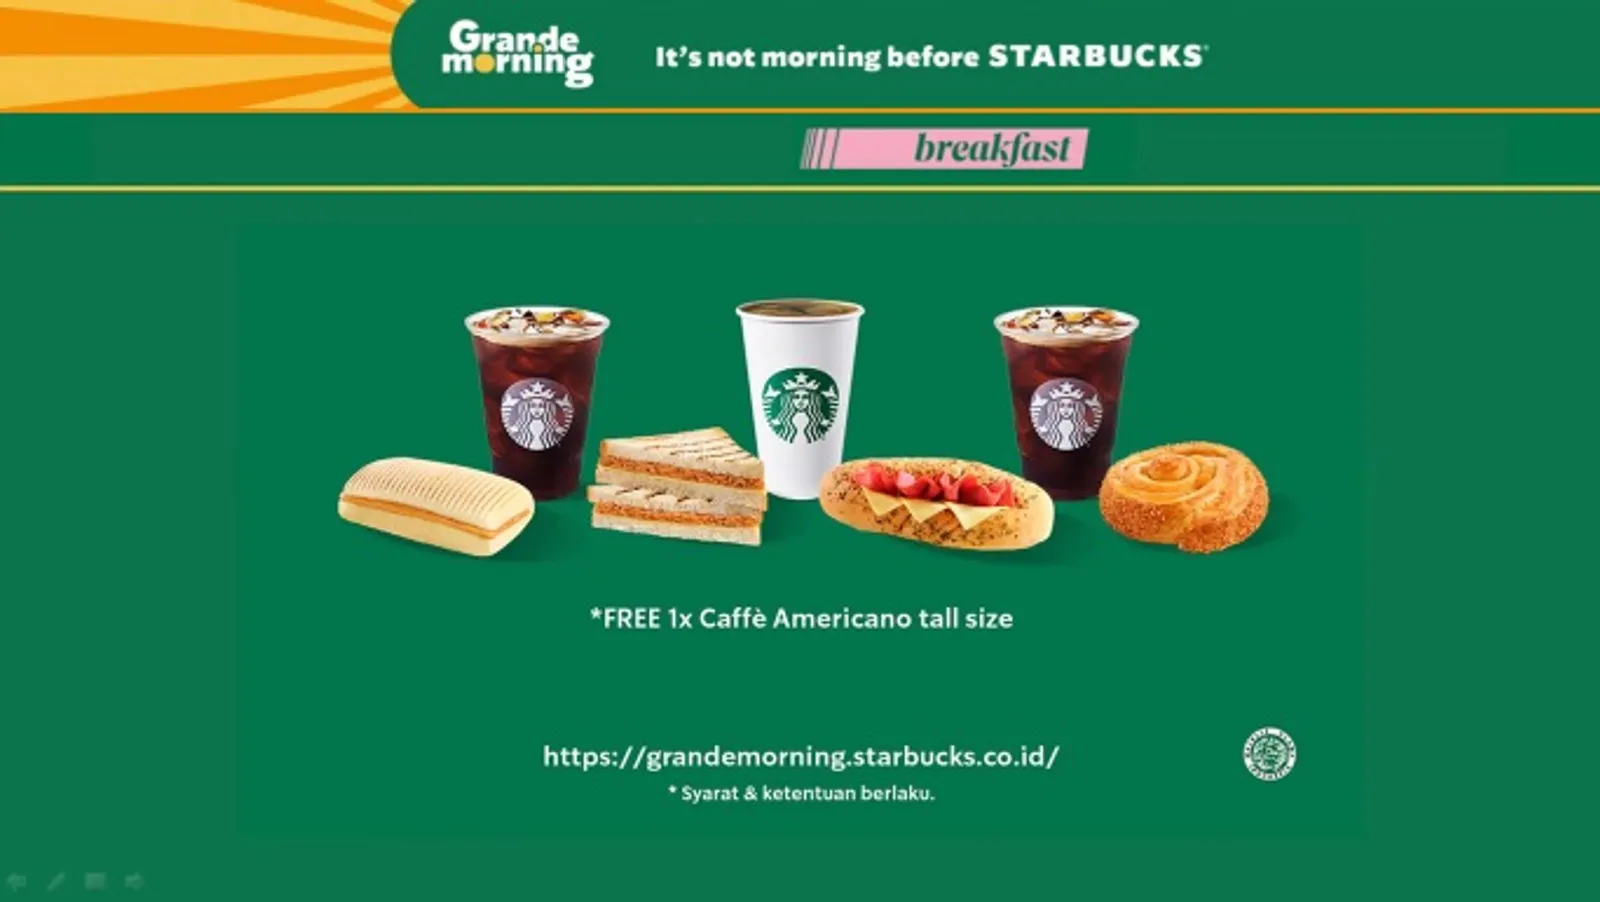 Kopi Bikin Pagi Lebih Semangat, Starbucks Luncurkan "Grande Morning"